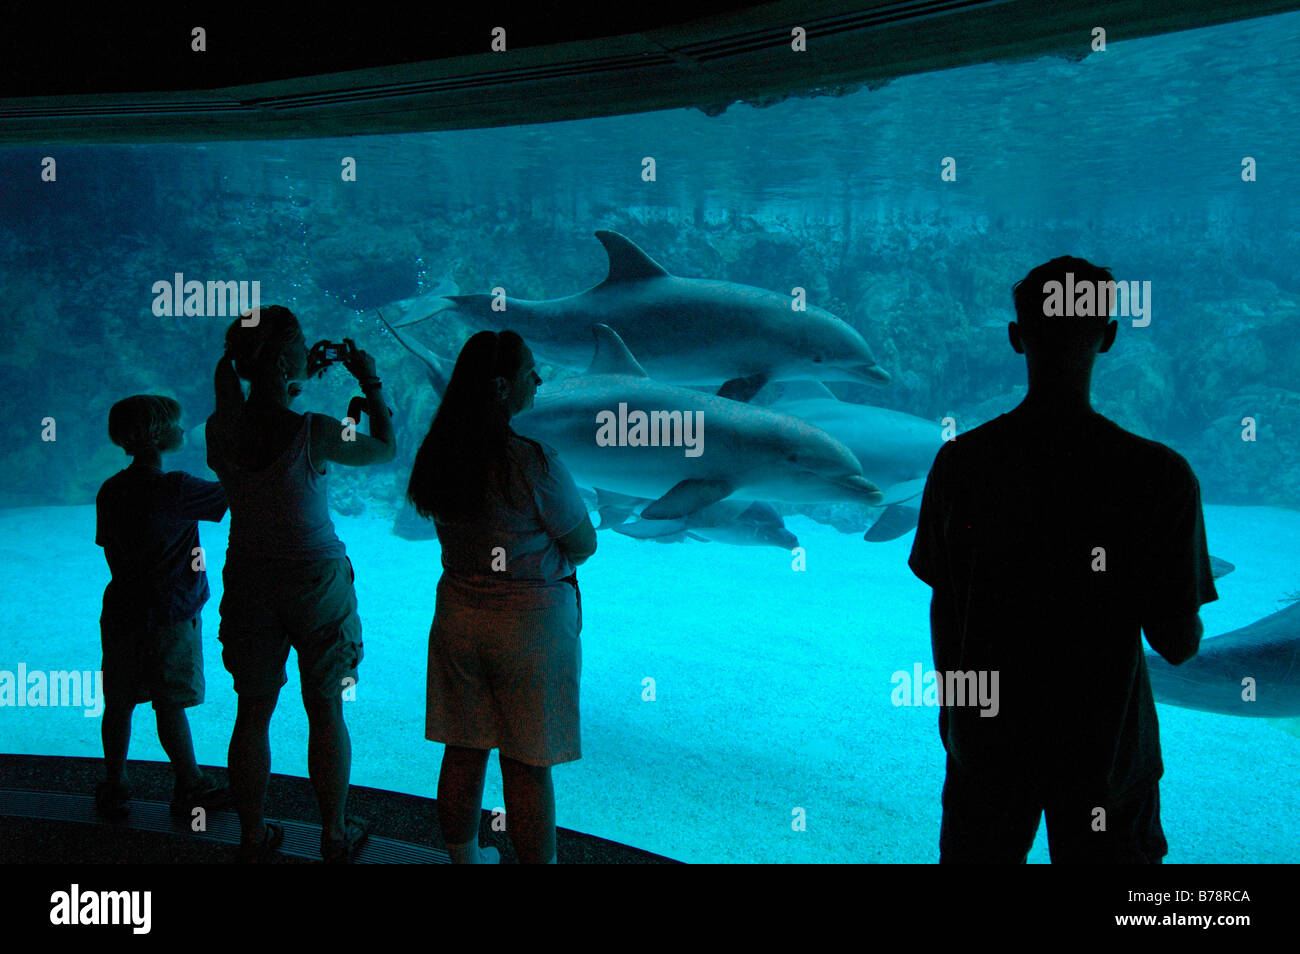 Les dauphins, SeaWorld Adventure Park, Orlando, Floride, USA, Amérique du Nord Banque D'Images